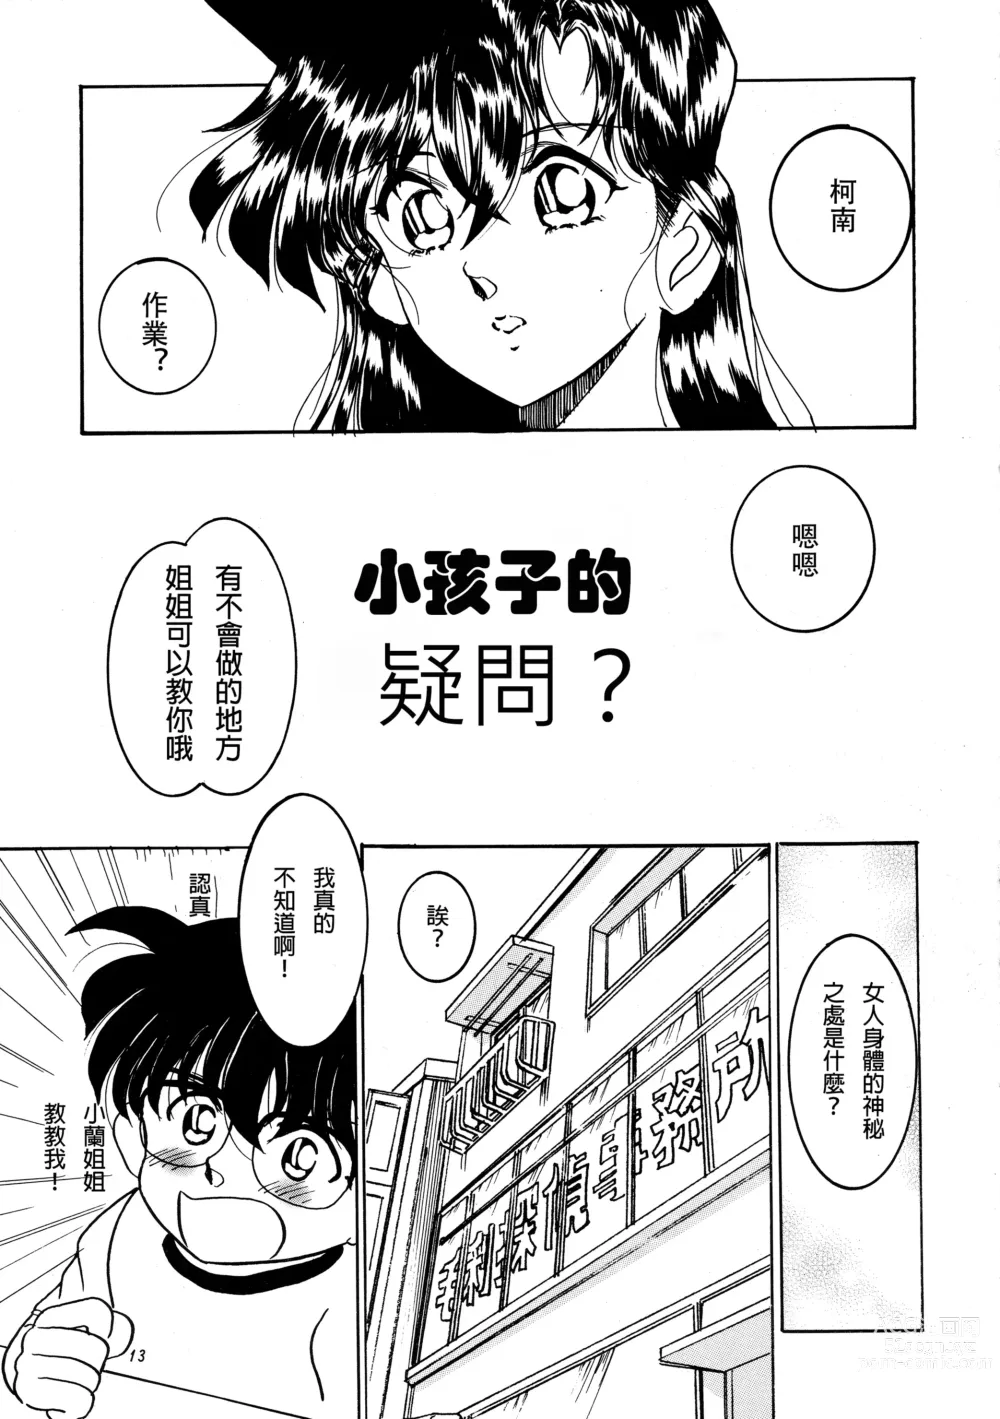 Page 12 of doujinshi Beika Saga Shoutengai Sono Ichi